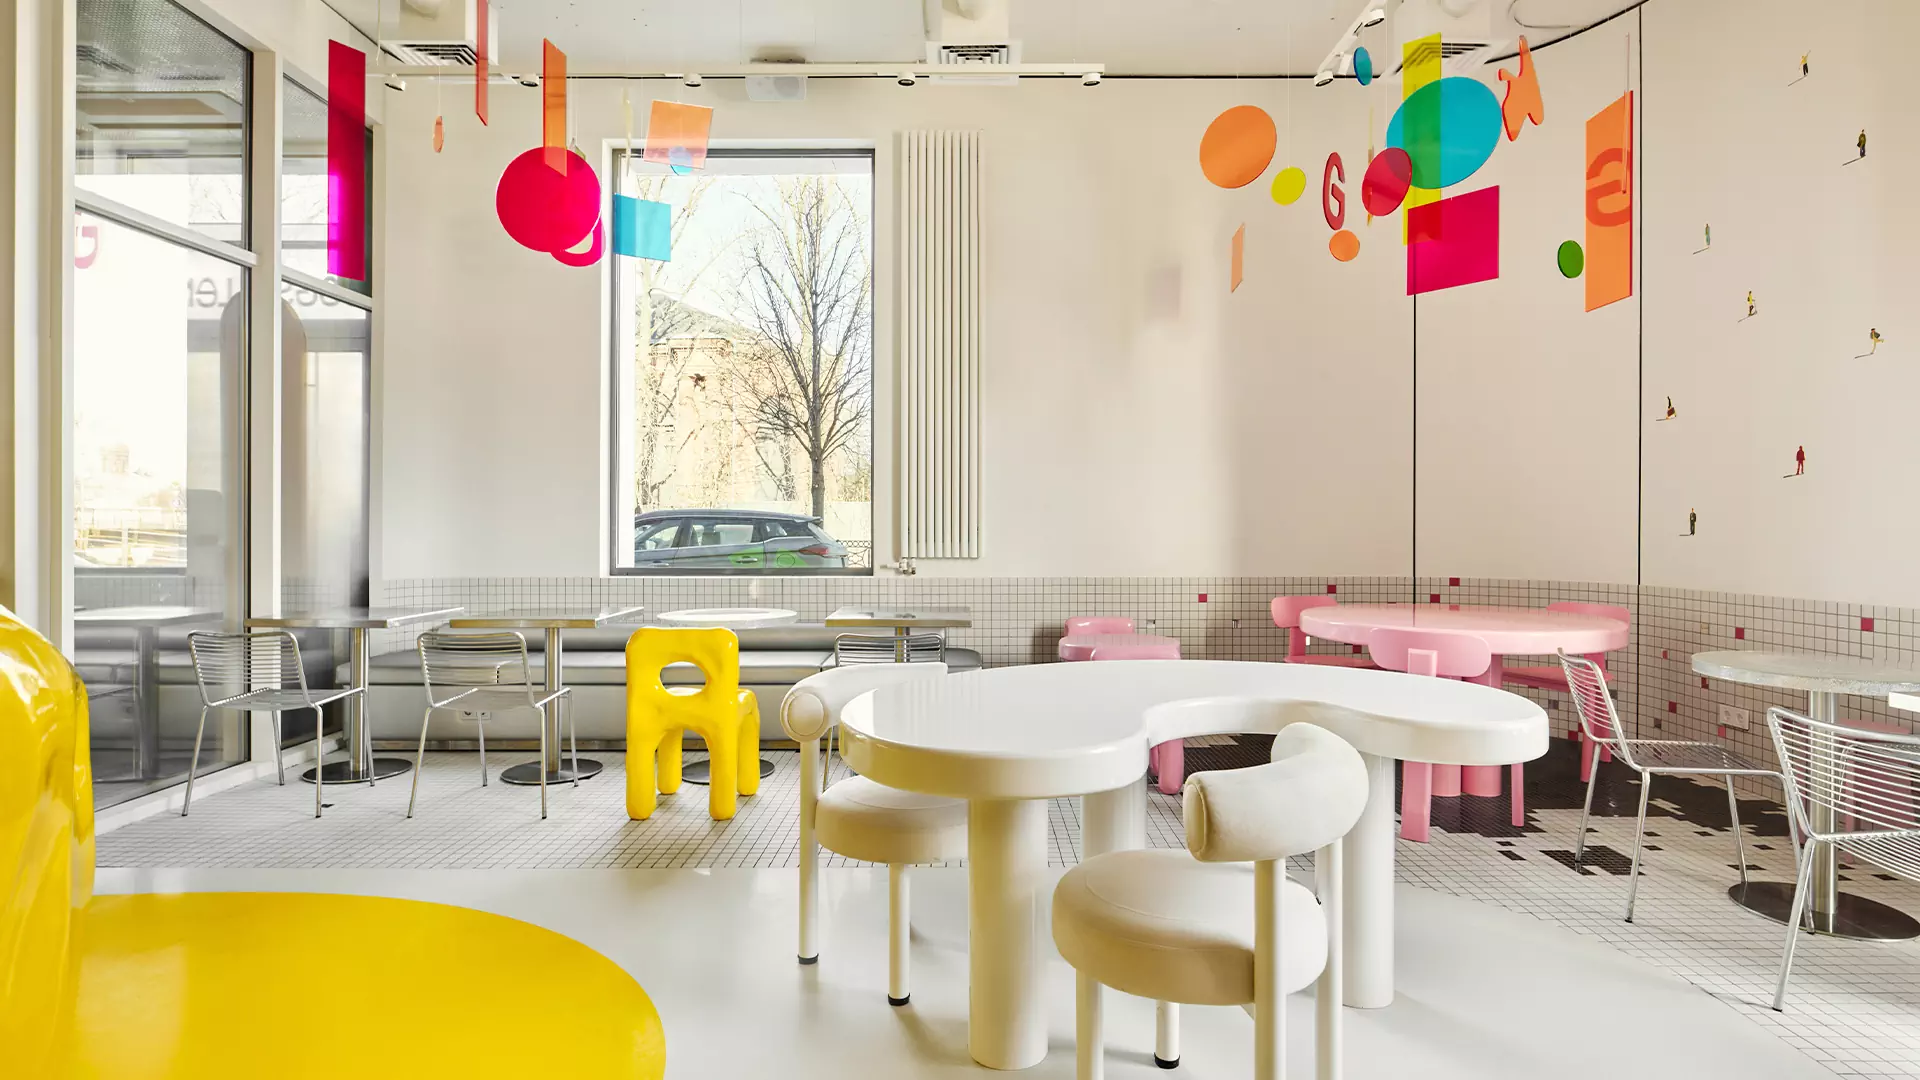 Баланс игривости и элегантности в ярком интерьере петербургского кафе — проект KIDZ